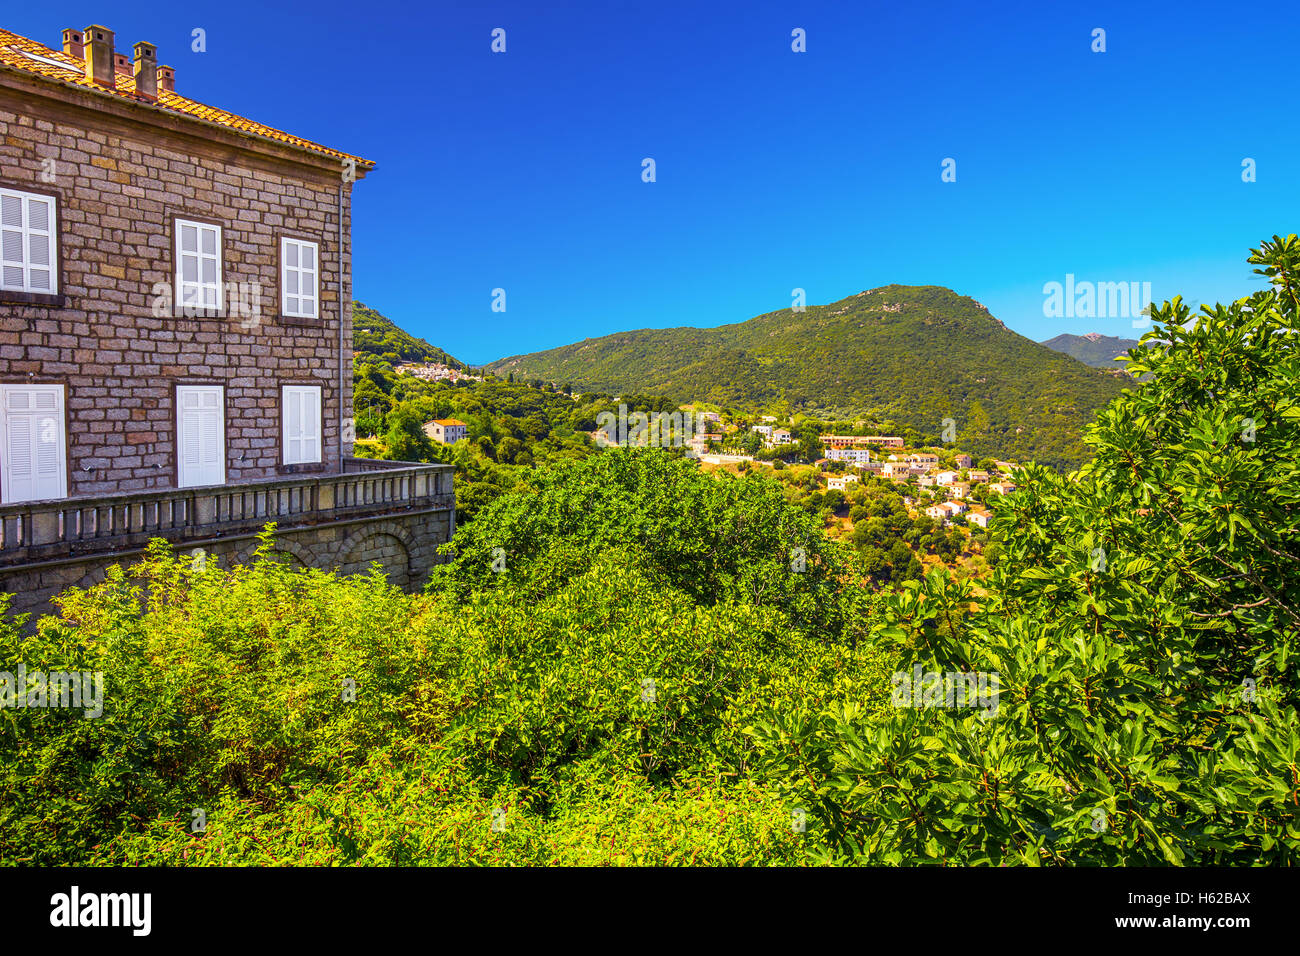 Vieux Centre-ville de la ville de Sartene, Corse, France, Europe. Banque D'Images